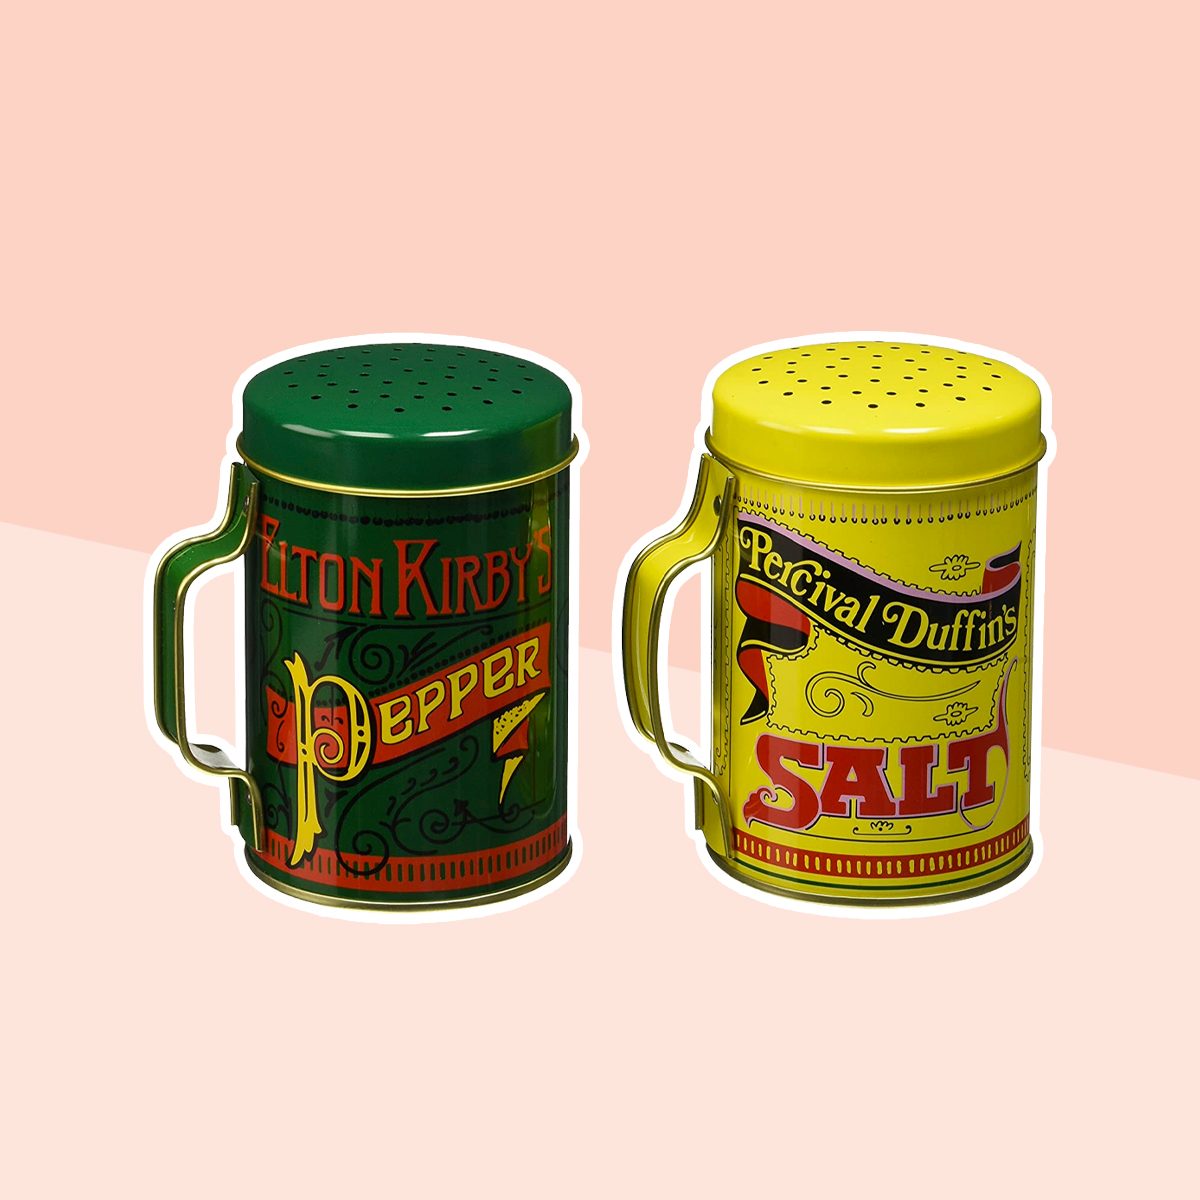 https://www.tasteofhome.com/wp-content/uploads/2021/09/Norpro-713-Salt-and-Pepper-Shaker-Set.jpg?fit=700%2C700